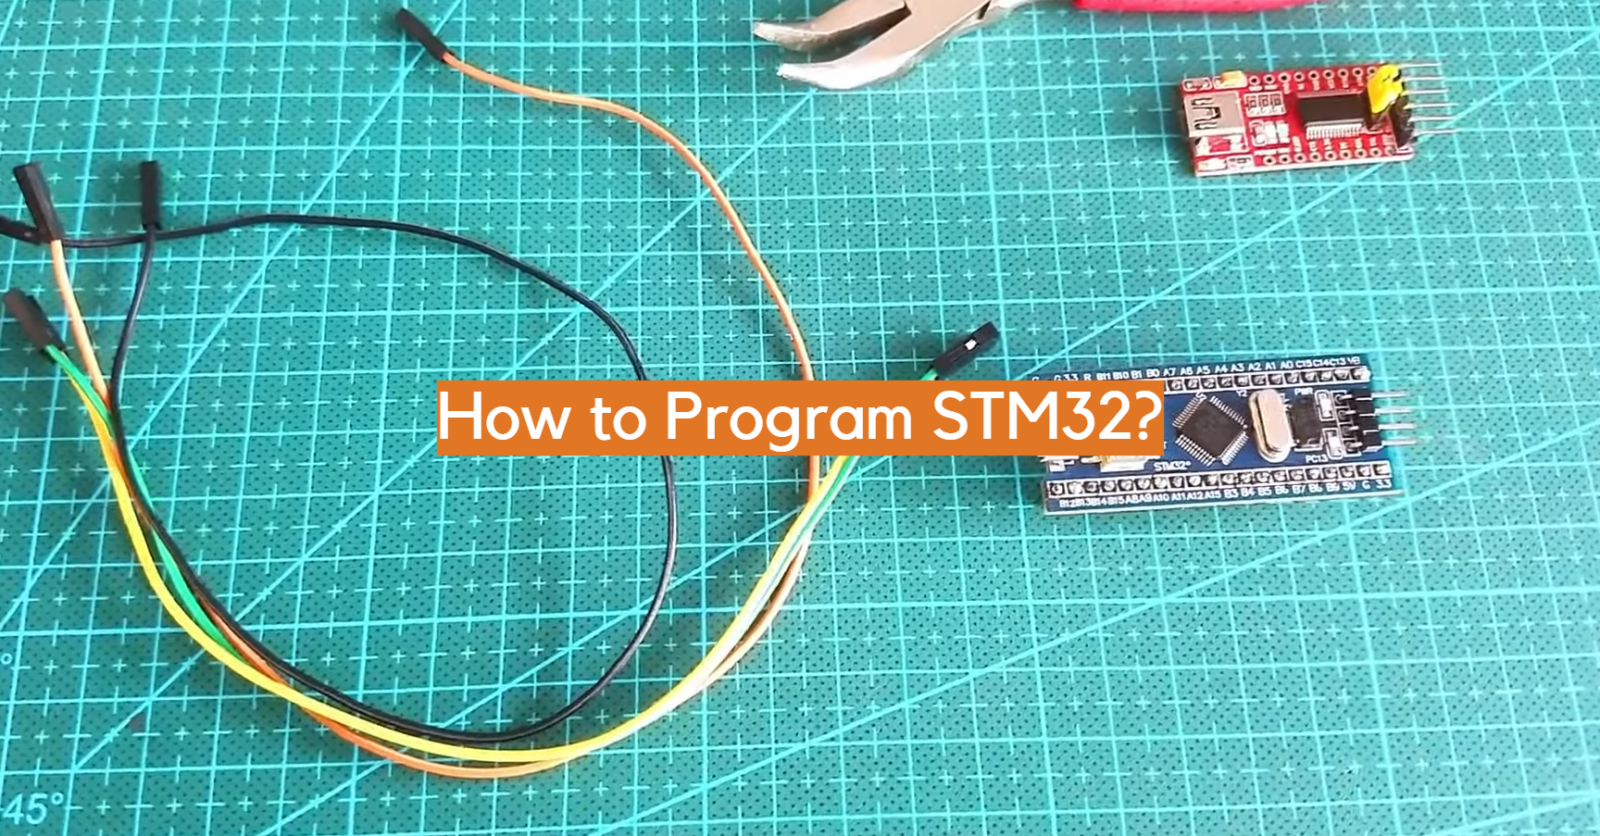 How to Program STM32?